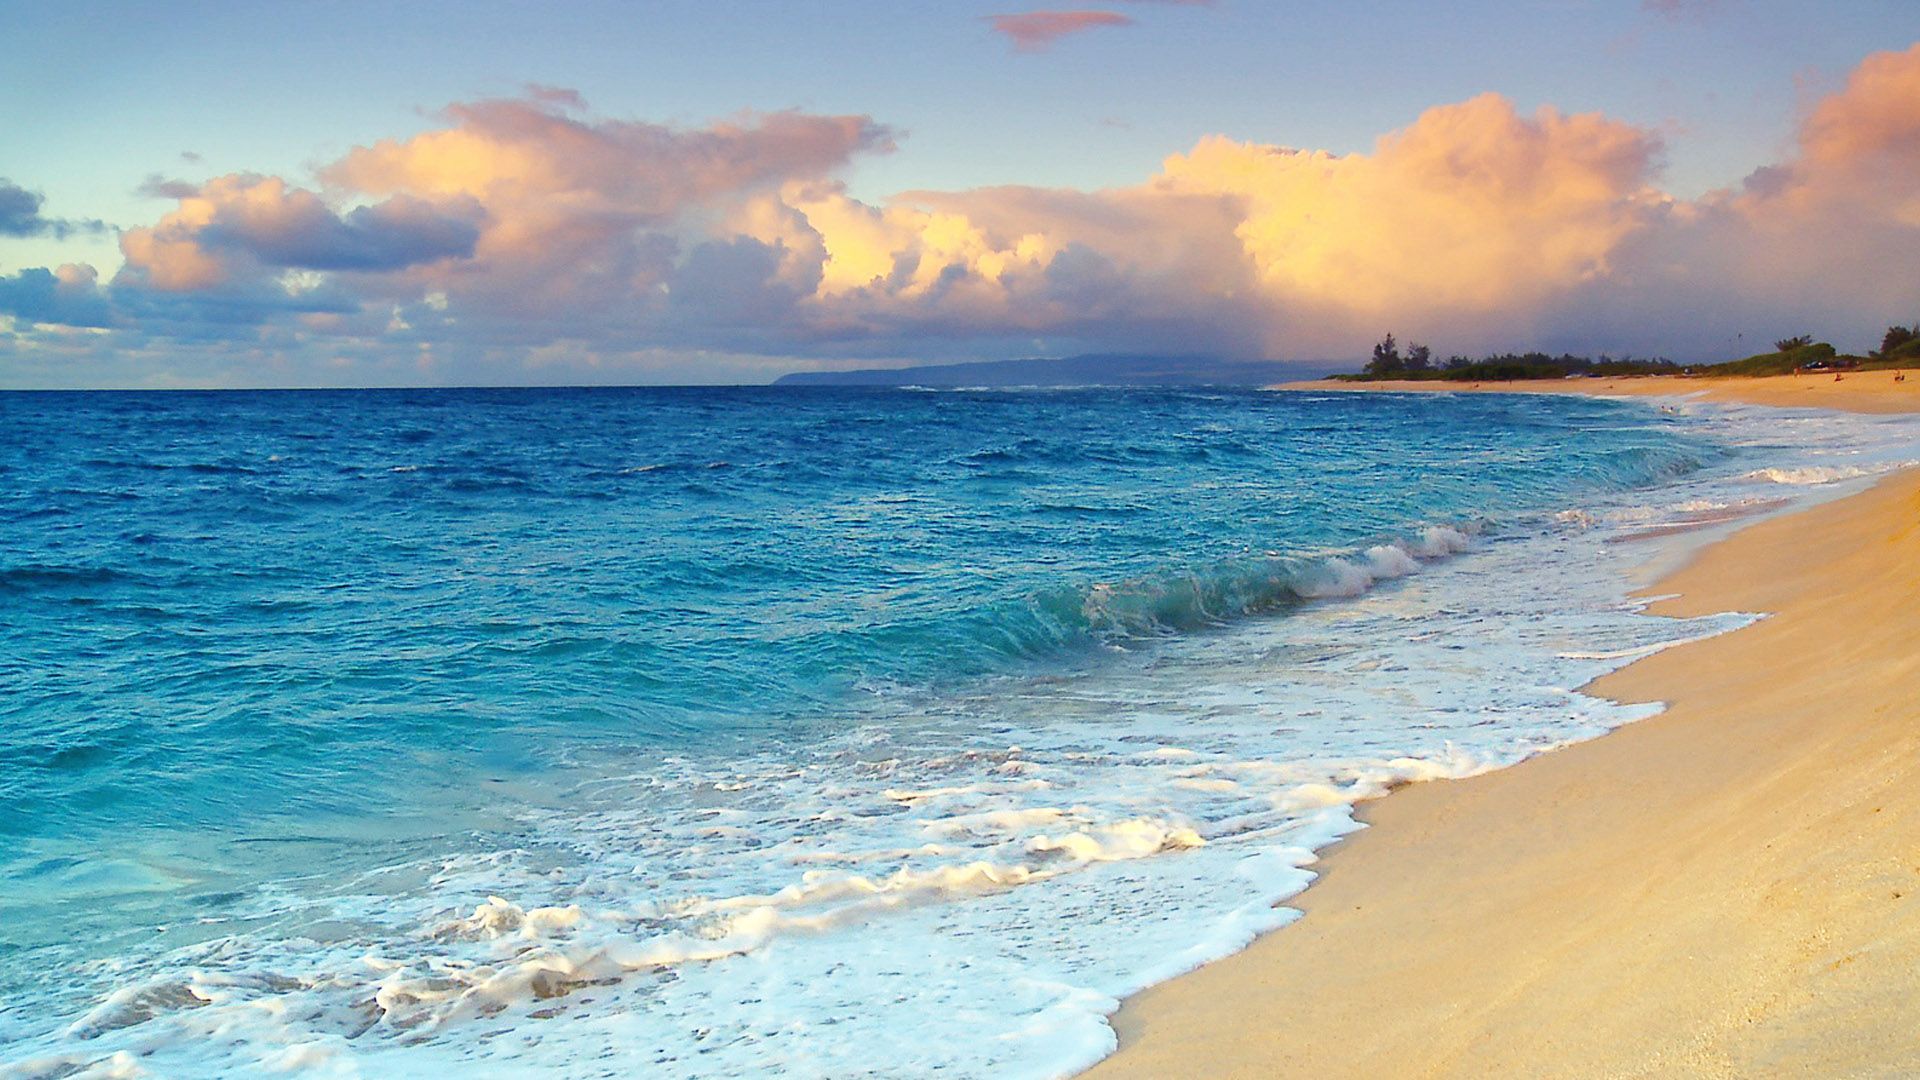 دانلود عکس سواحل هاوایی با کیفیت بالا